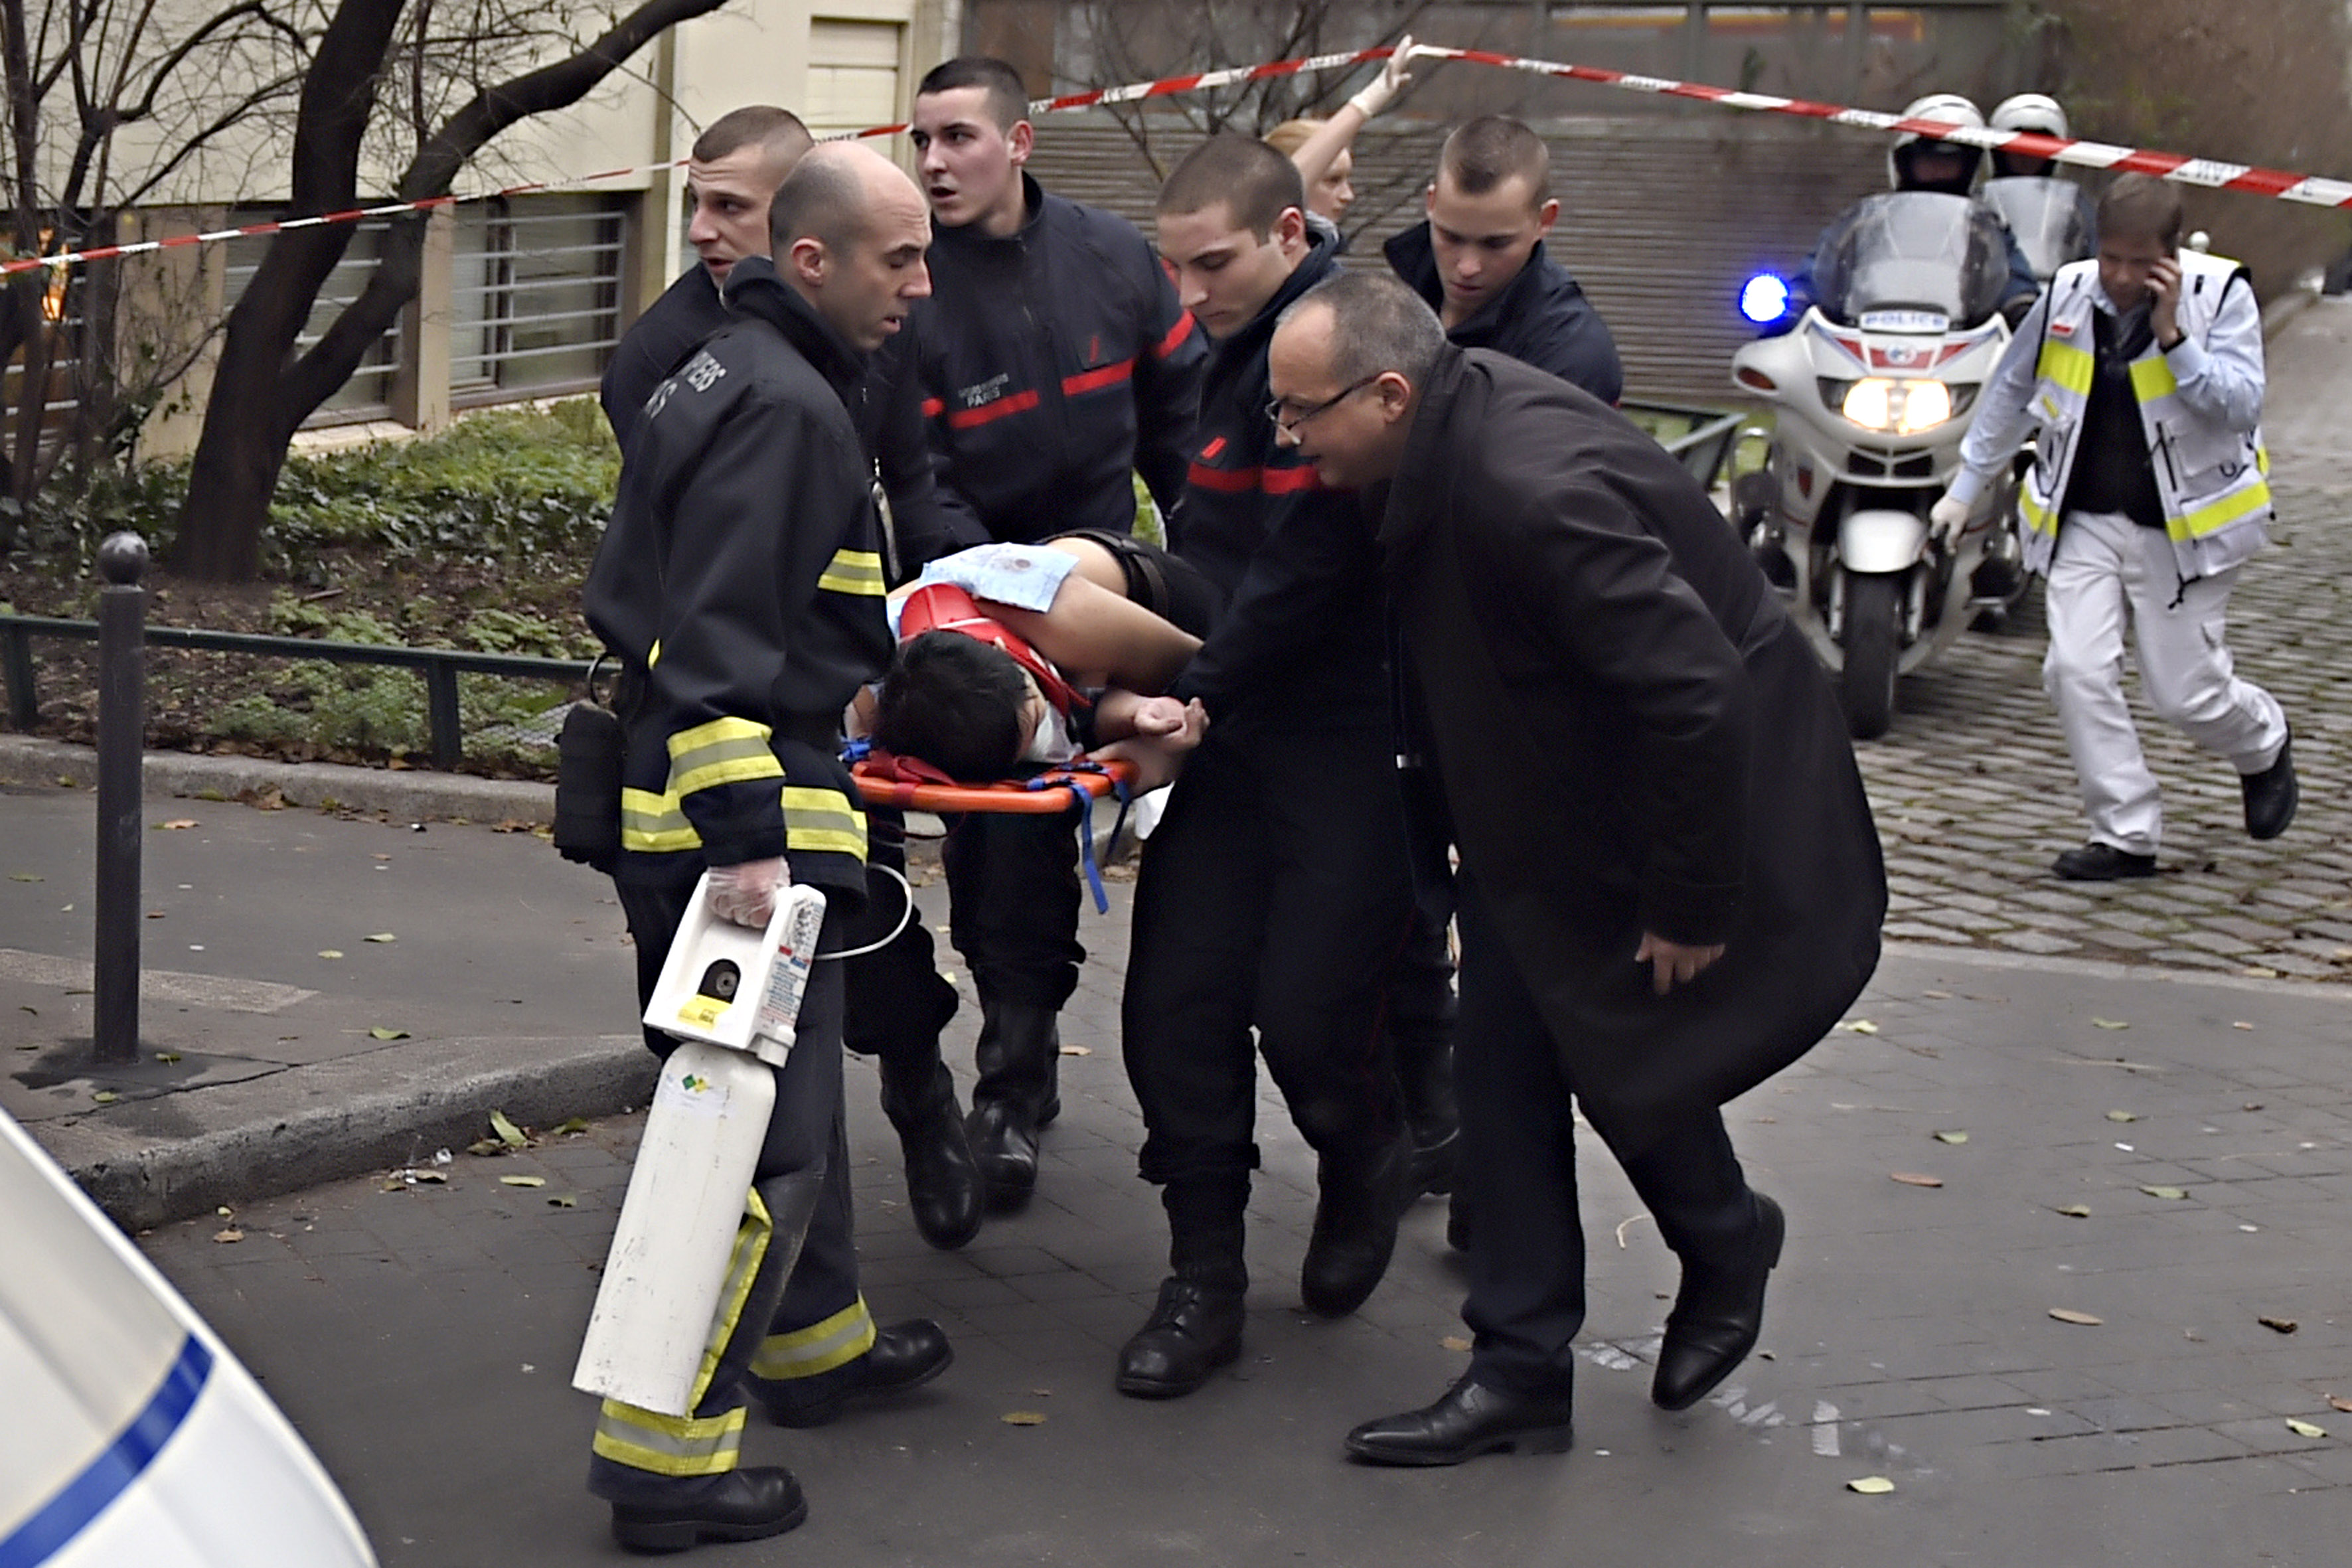 Megtámadták egy hetilap székházát Párizsban, sokan életüket vesztették